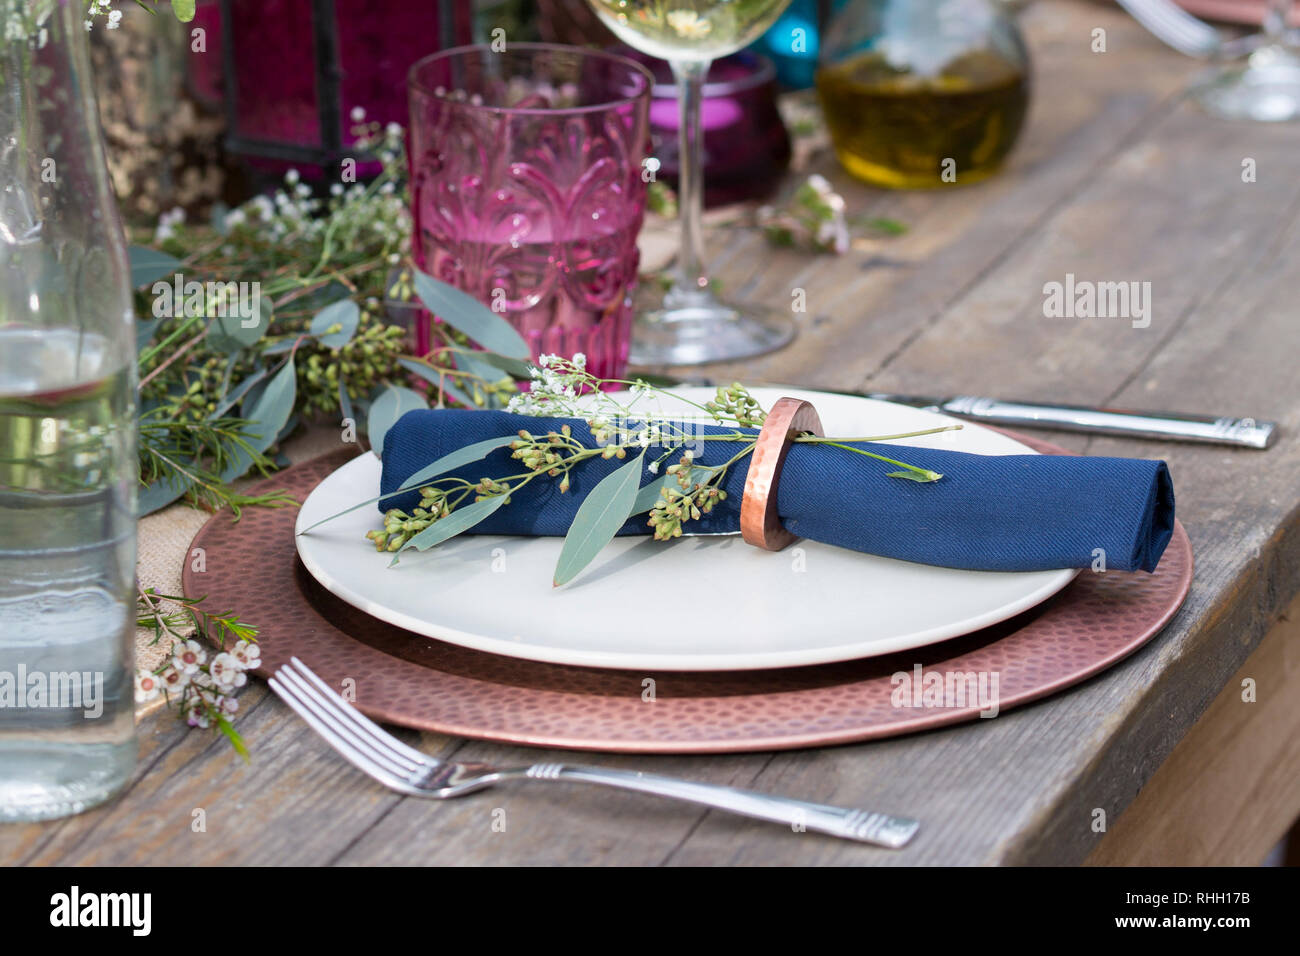 Blau serviette in Ring auf weiße Platte mit Kupfer Ladegerät, setzen Sie die Einstellung auf Holz Outdoor Party Esstisch mit Blumen, Glas, und Kerze. Stockfoto